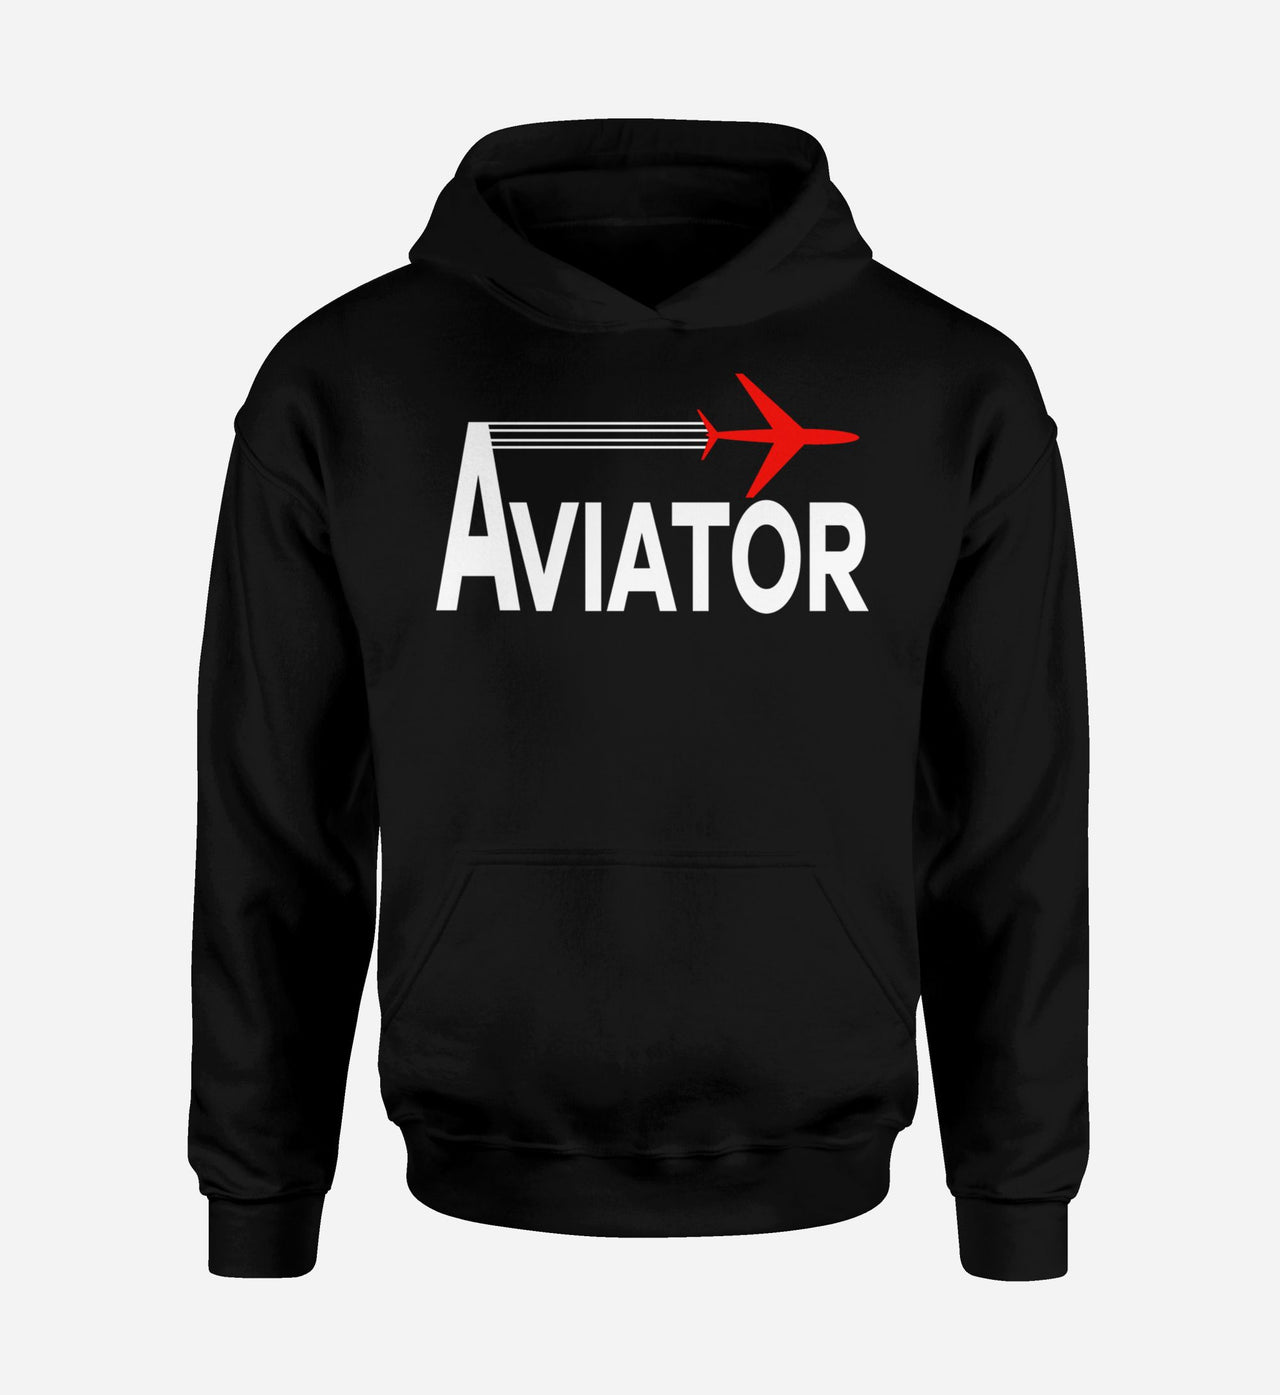 Aviator Designed Hoodies